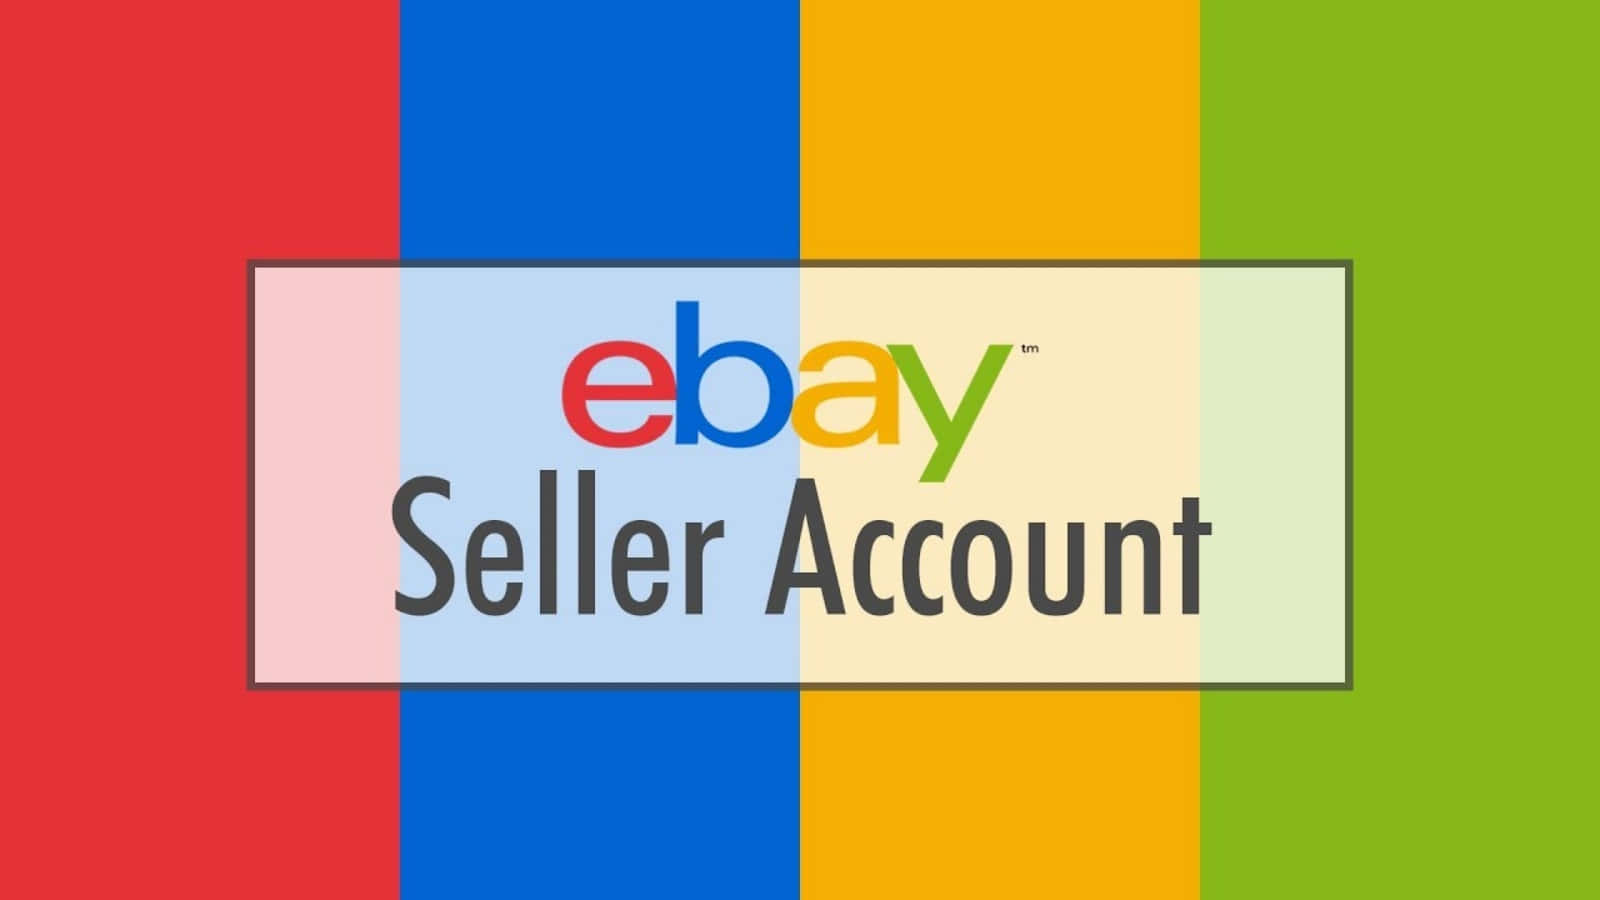 Kaufensie Alternative Und Ungewöhnliche Produkte Auf Ebay.